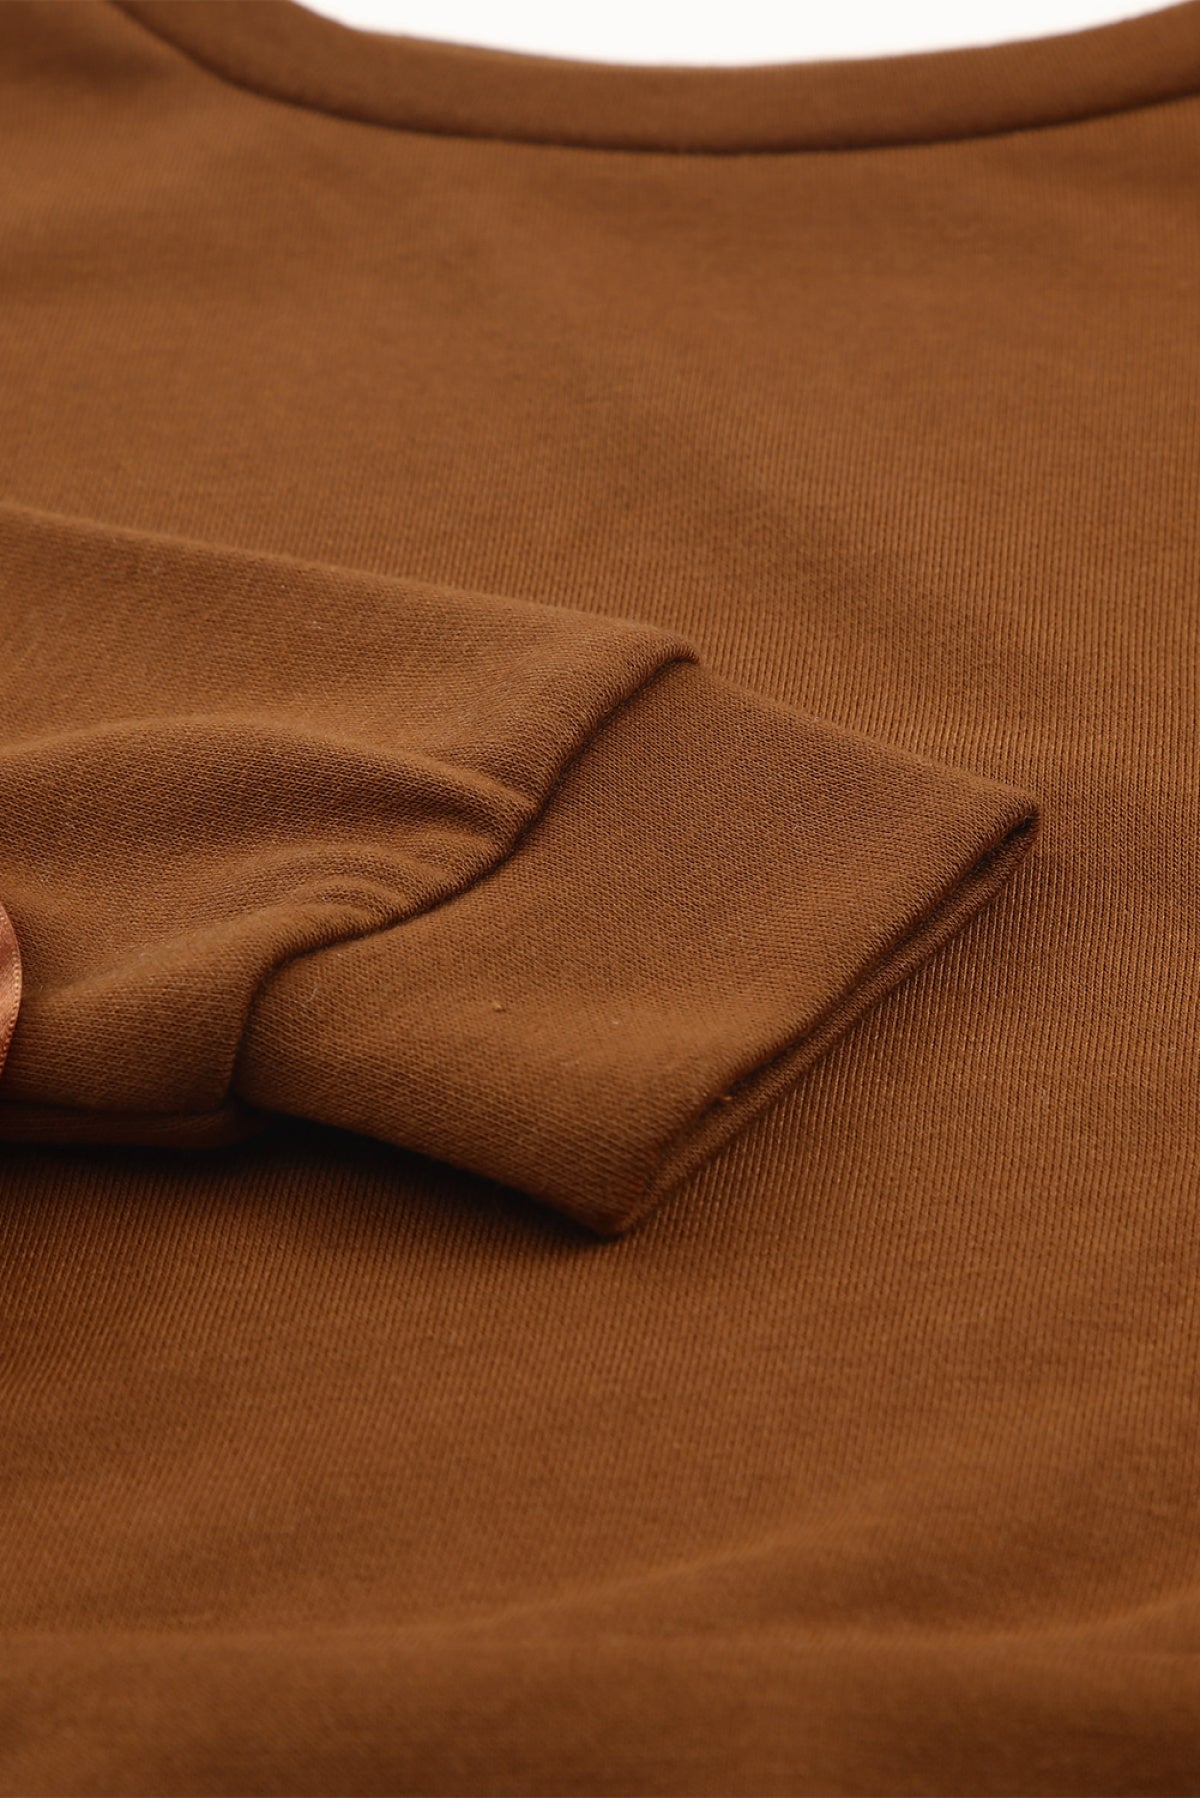 Brown Grommet Ribbon Tied Long Sleeve Crop Top